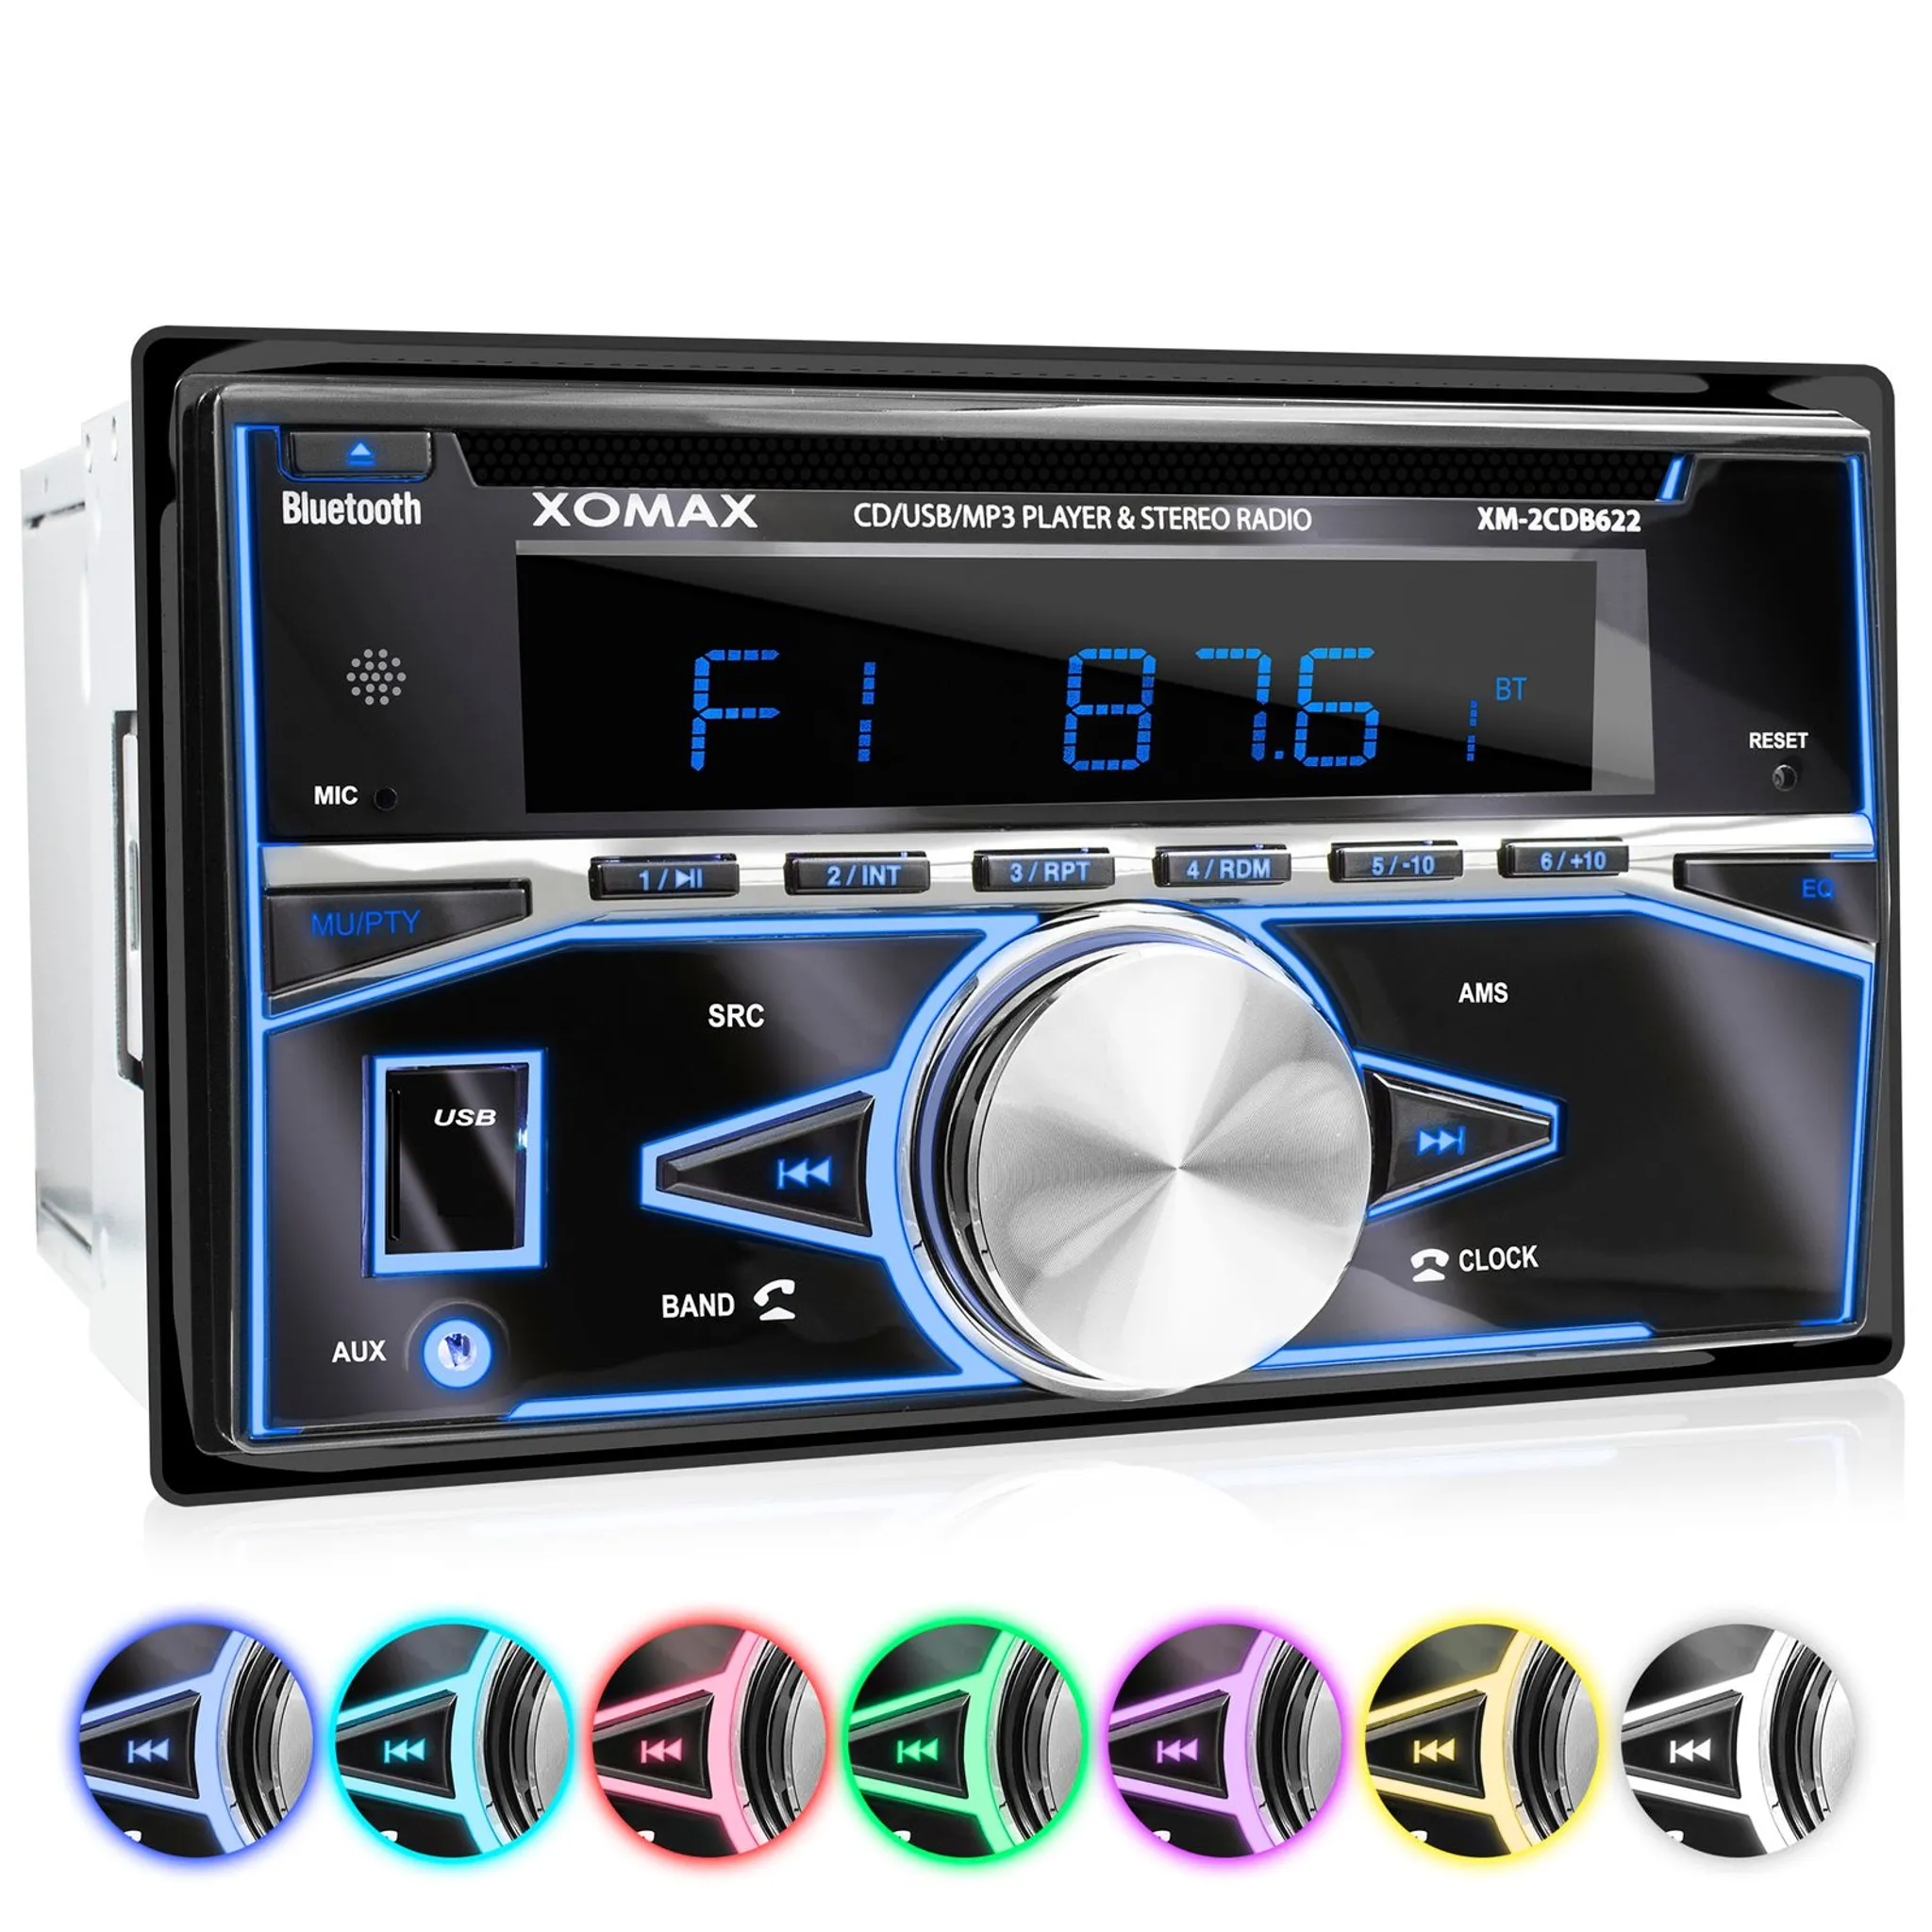 XOMAX XM-R280 Autoradio mit Bluetooth Freisprecheinrichtung, 2